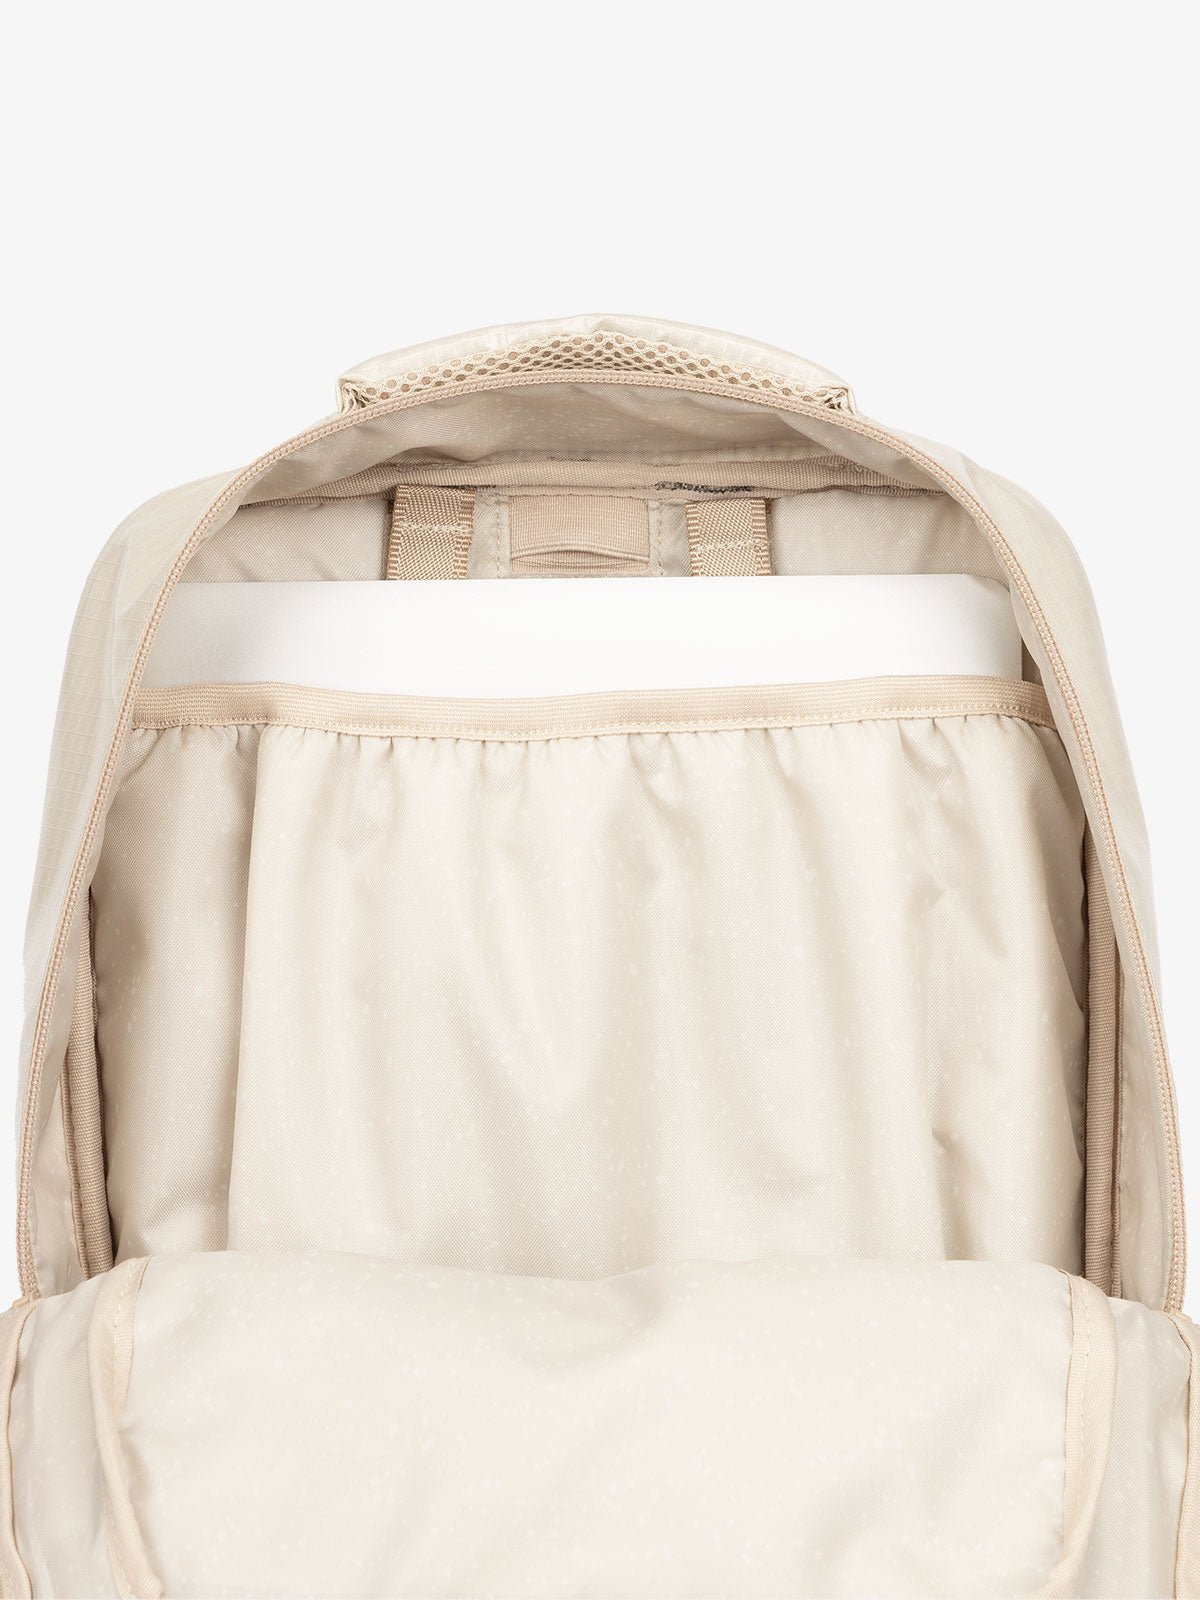 CALPAK Terra Laptop Backpack with laptop slip pocket in white sands